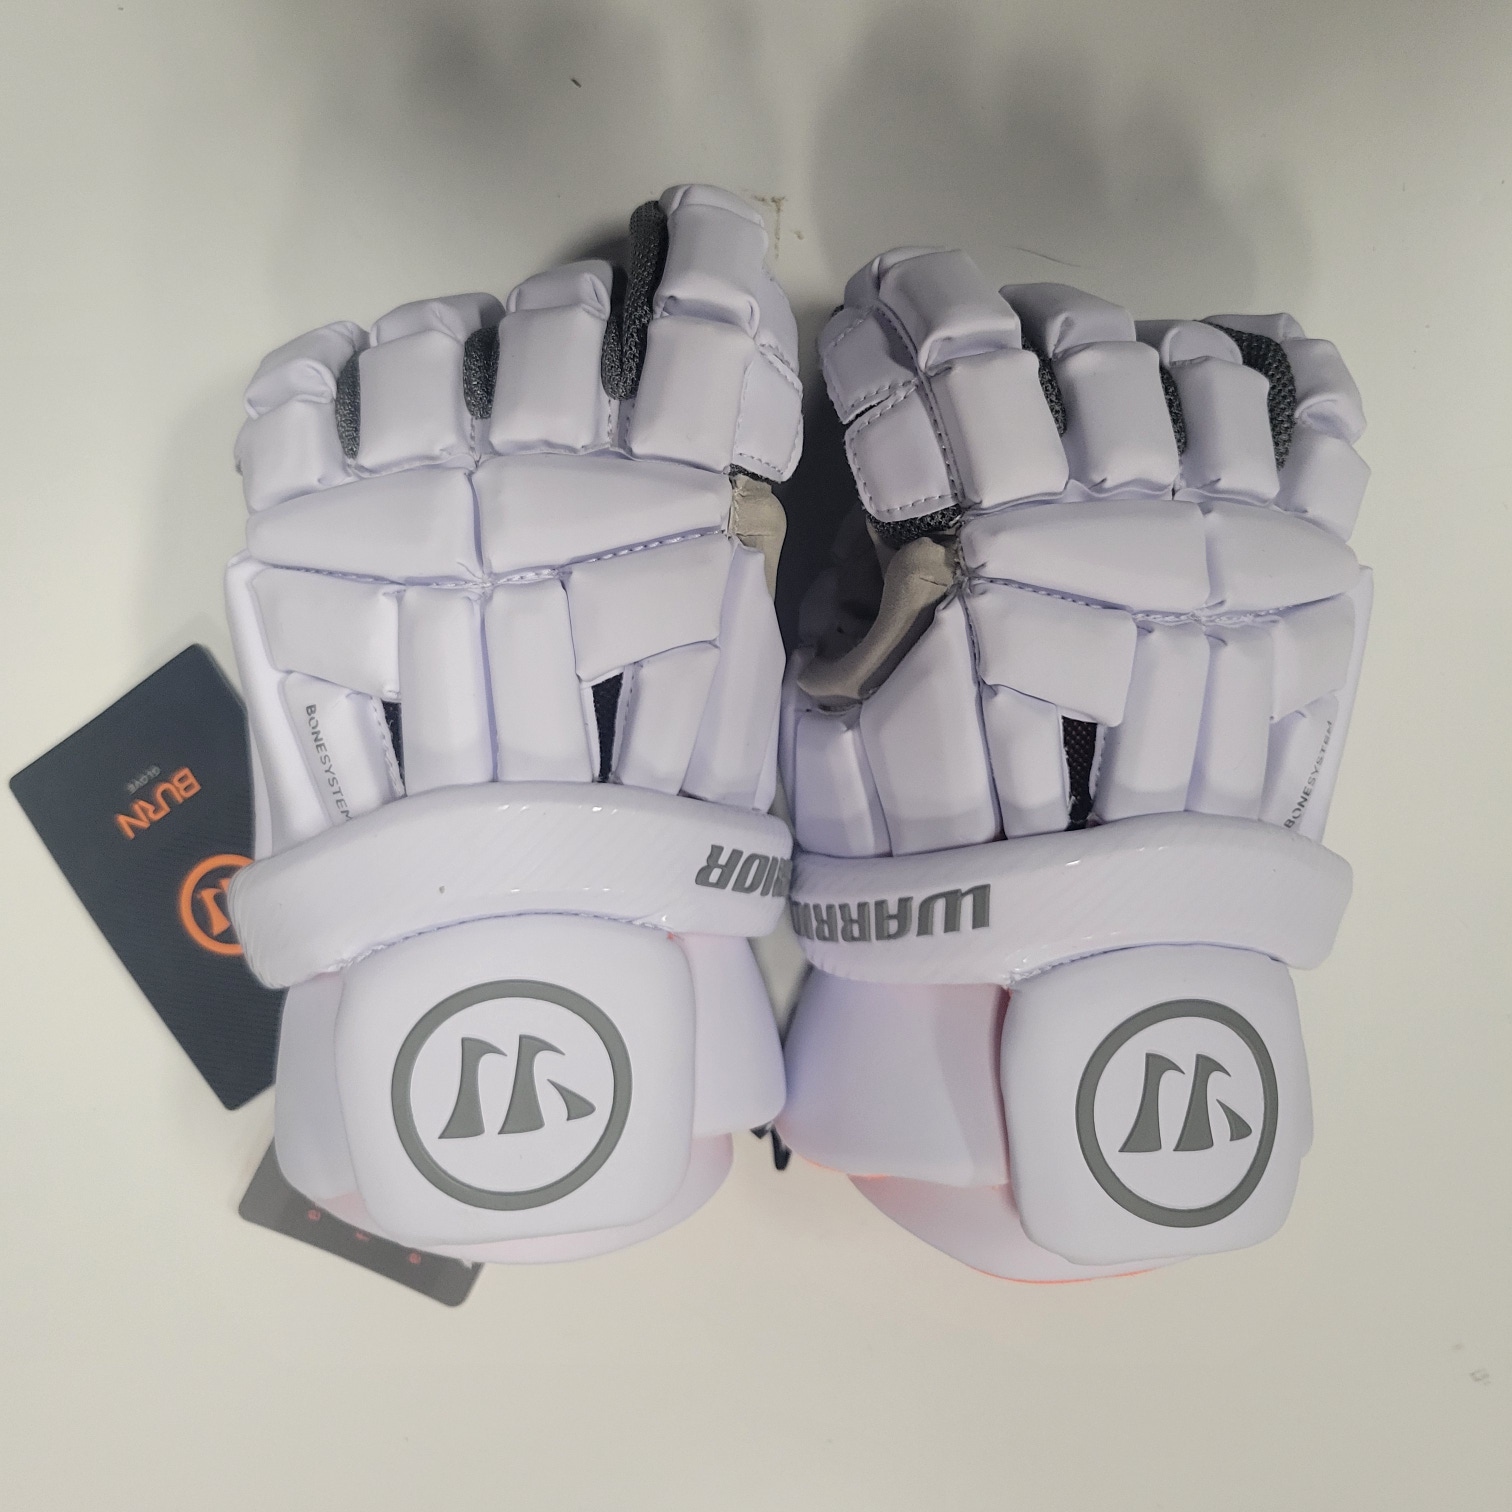 New Warrior Burn Lacrosse Gloves Large White - 23' Model